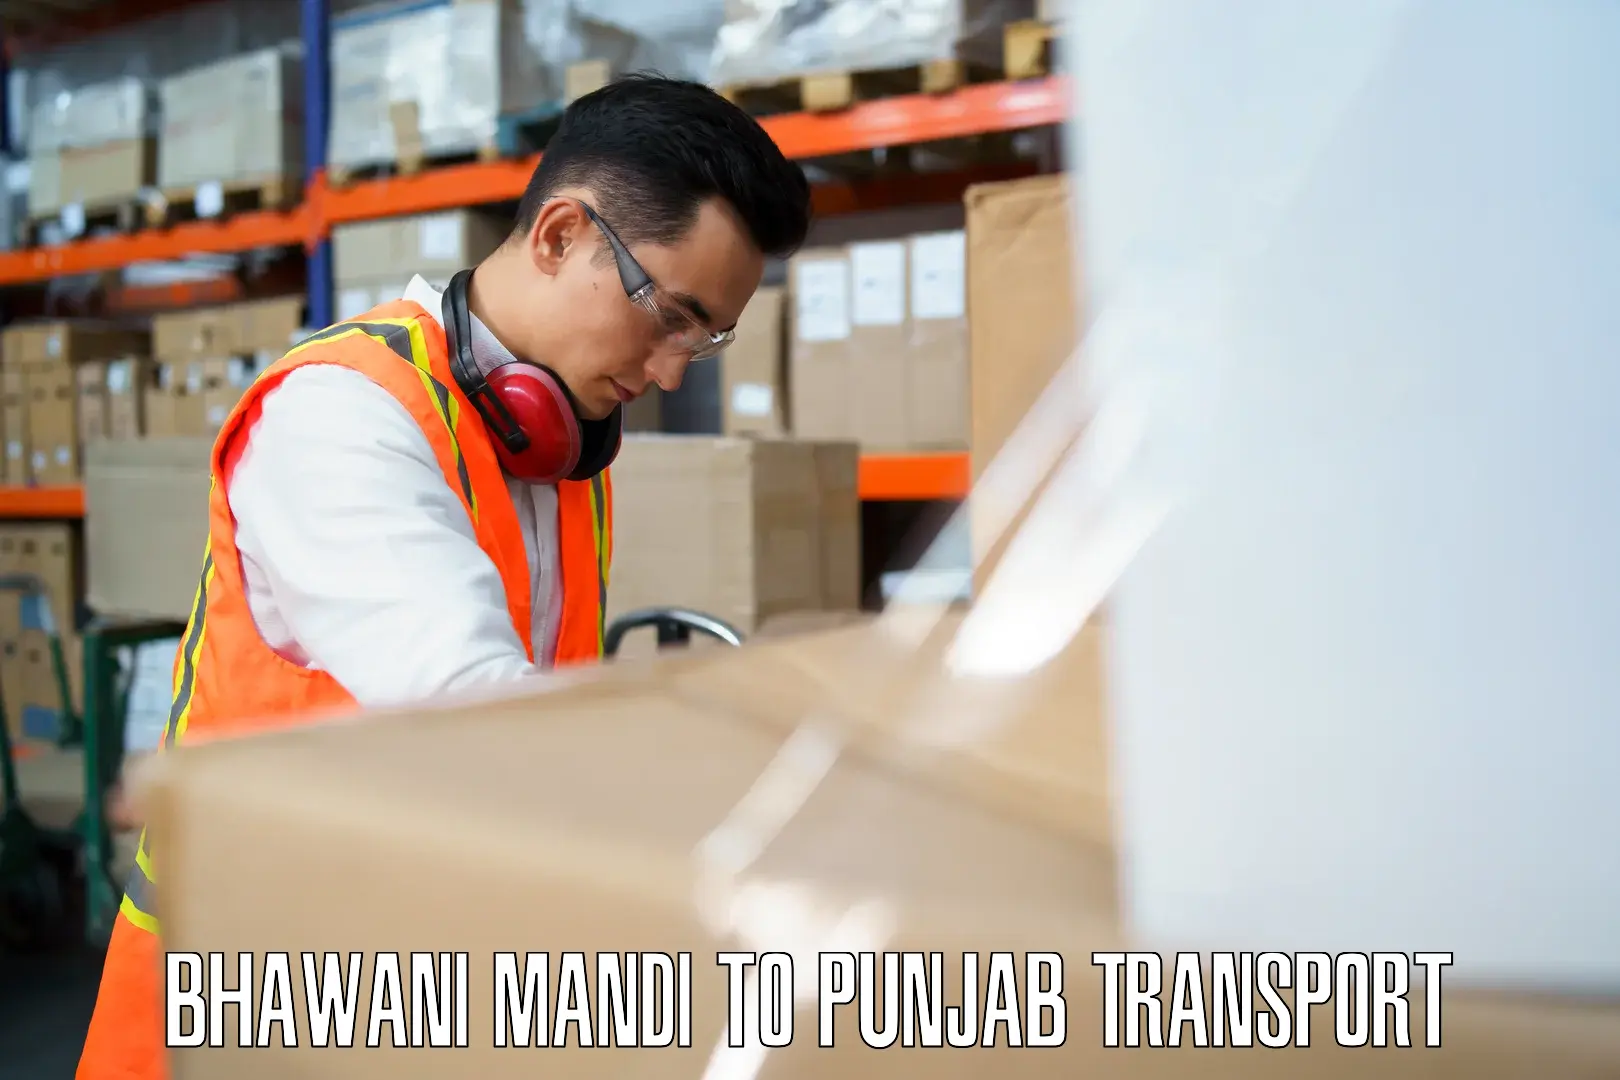 Pick up transport service Bhawani Mandi to Firozpur